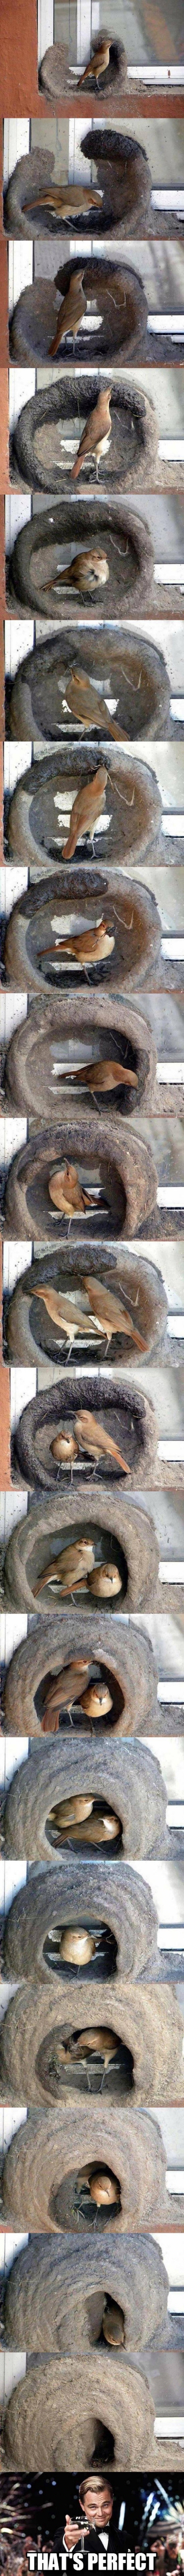 Meme_otros - Genial: El paso a paso de un pájaro haciendo su nido